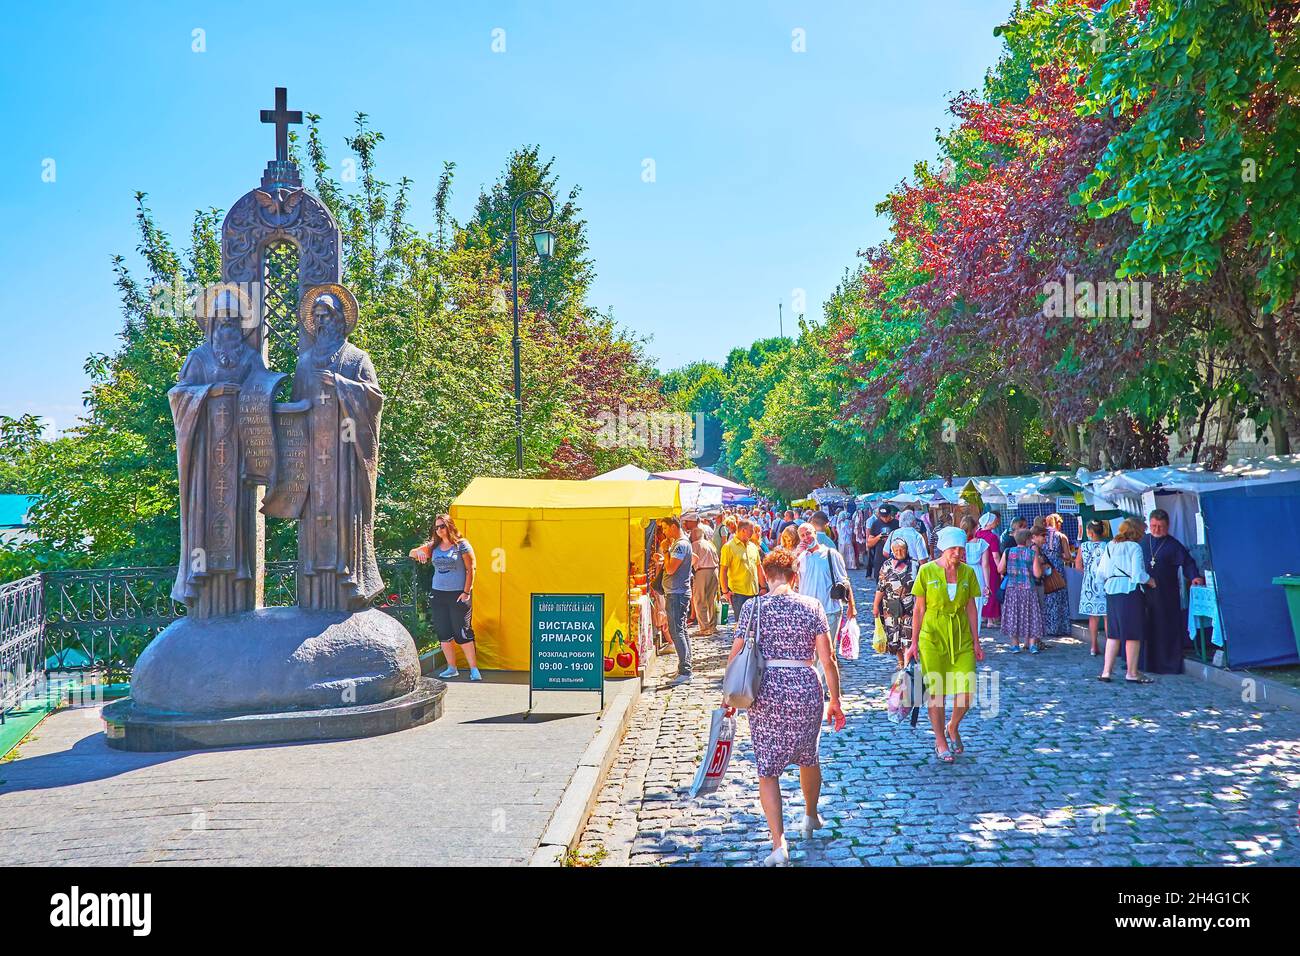 KIEV, UCRANIA - 14 DE AGOSTO de 2021: El callejón abarrotado del mercado de la miel en los terrenos del monasterio de Kyiv Pechersk Lavra, el 14 de agosto en Kiev Foto de stock